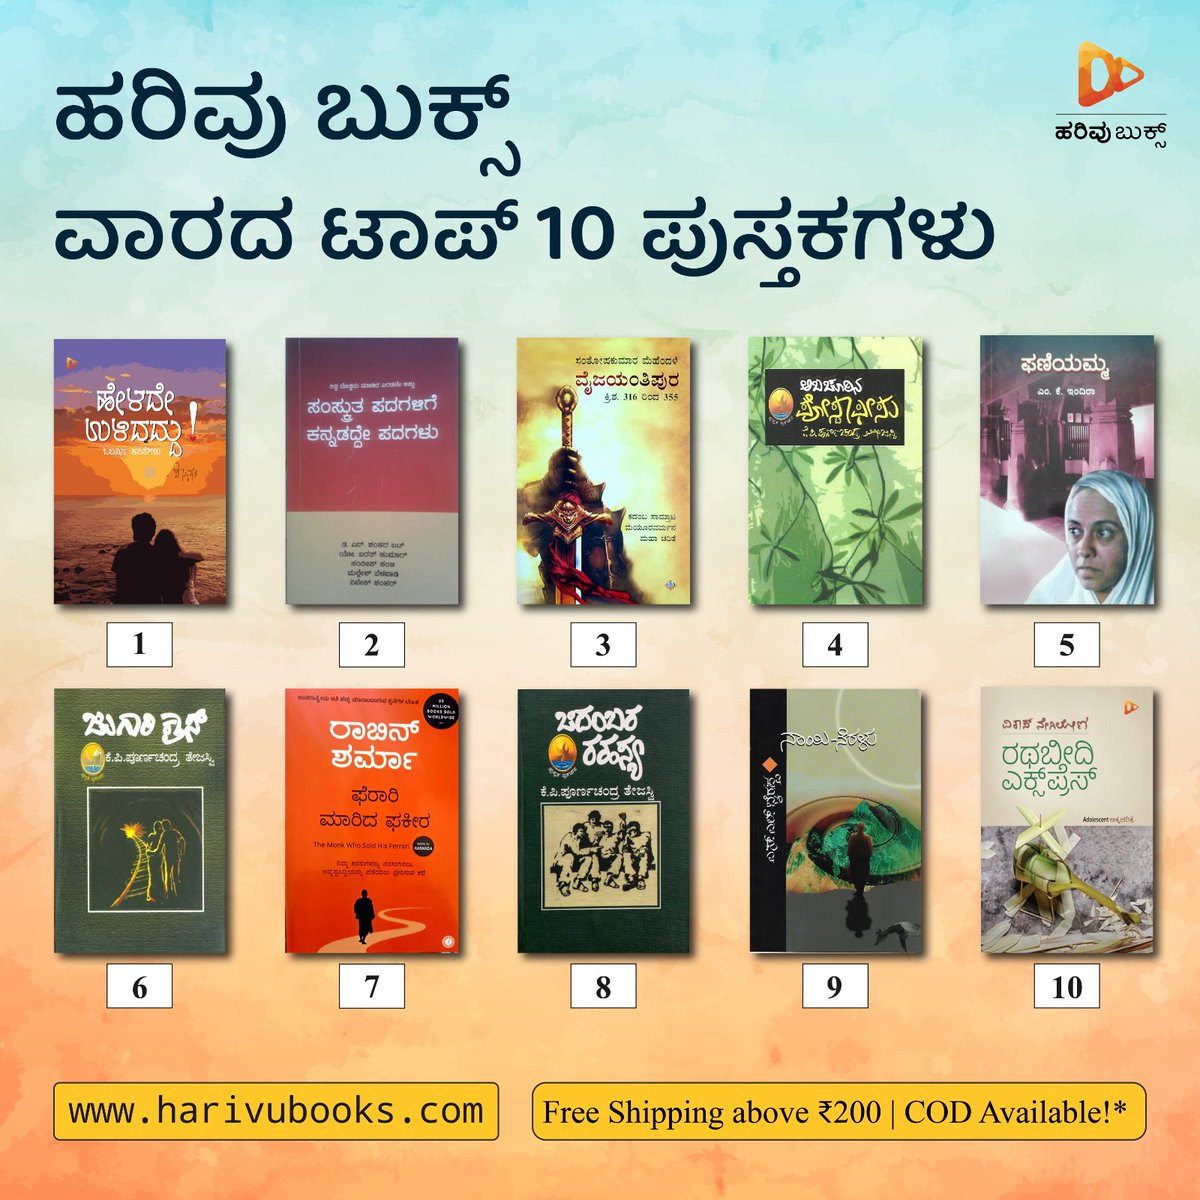 ಈ ವಾರದ ಟಾಪ್ 10 ಪುಸ್ತಕಗಳು!
harivubooks.com/collections/va…

#top10 #top10books #weeklytop10 #harivutop10 #books #kannadabooks #mustreadbooks